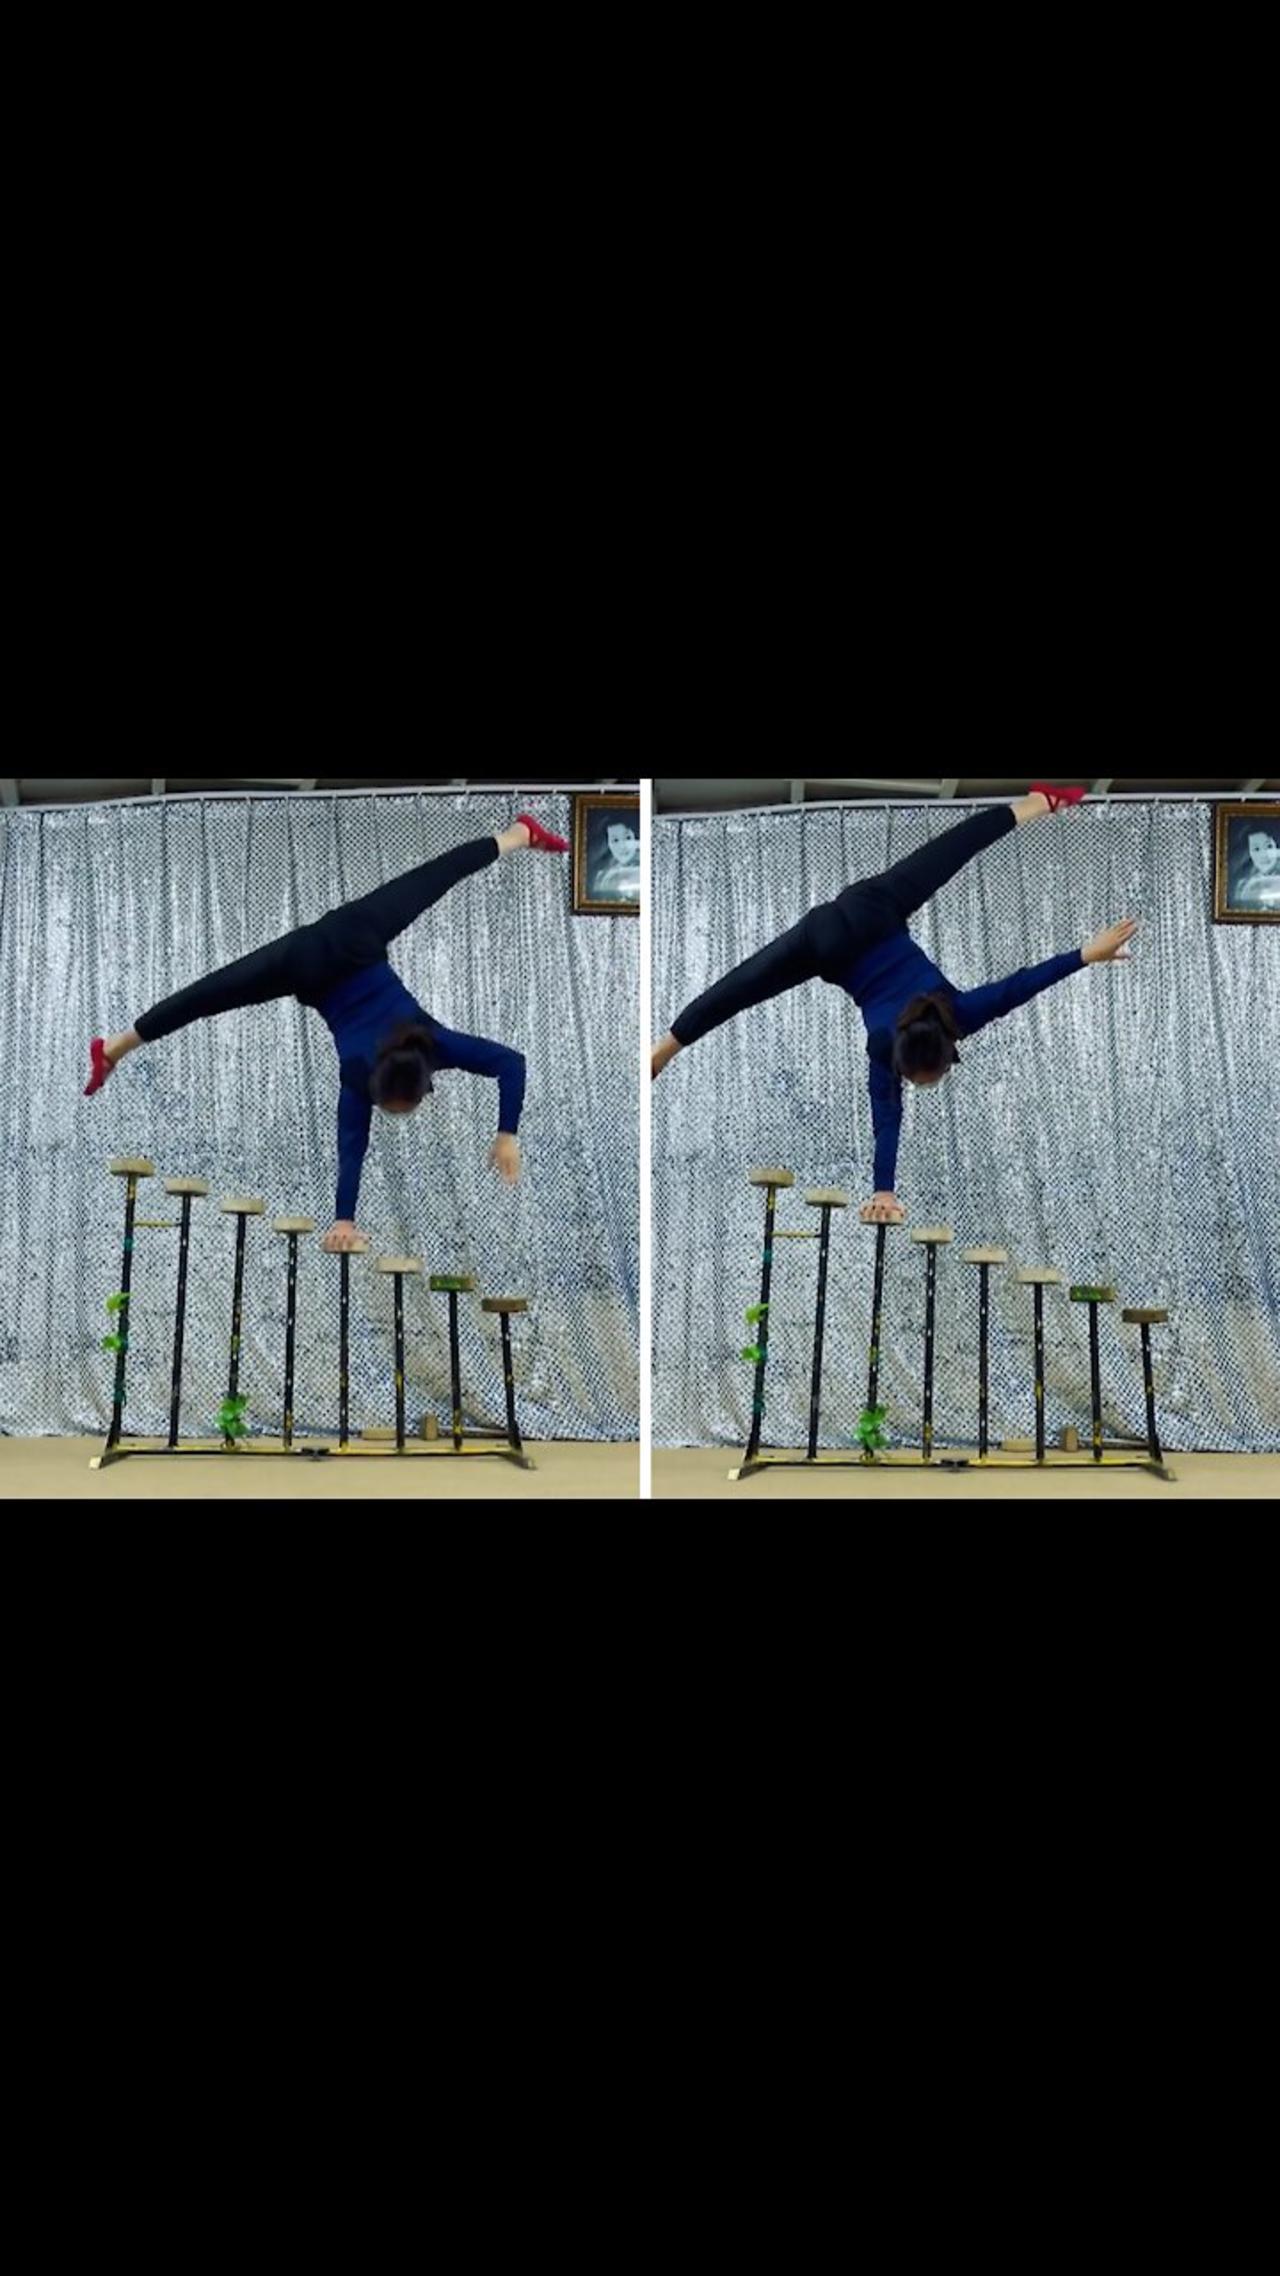 Cirque du Soleil artist performs impressive one-arm handstand